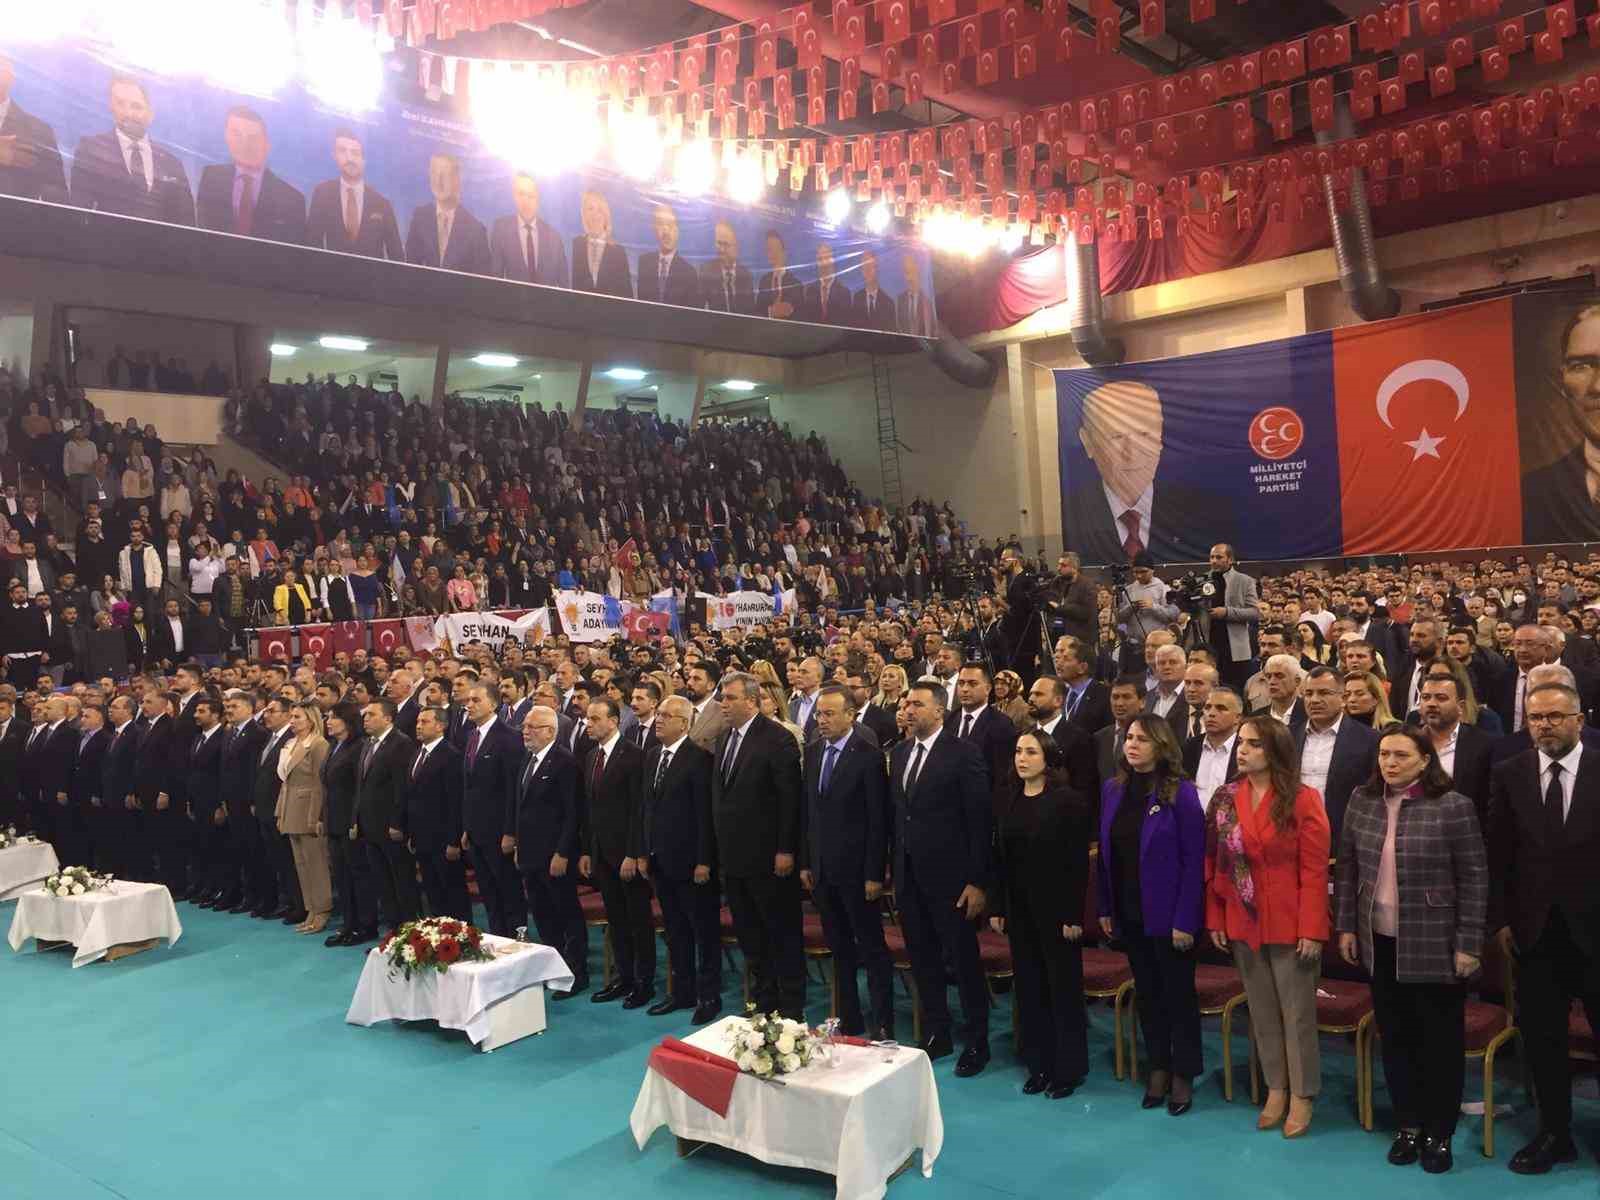 AK Parti Sözcüsü Çelik’ten muhalefete yanıt: "Hepinize yeteriz, hepinizin haddini bildirmeye hazırız"
